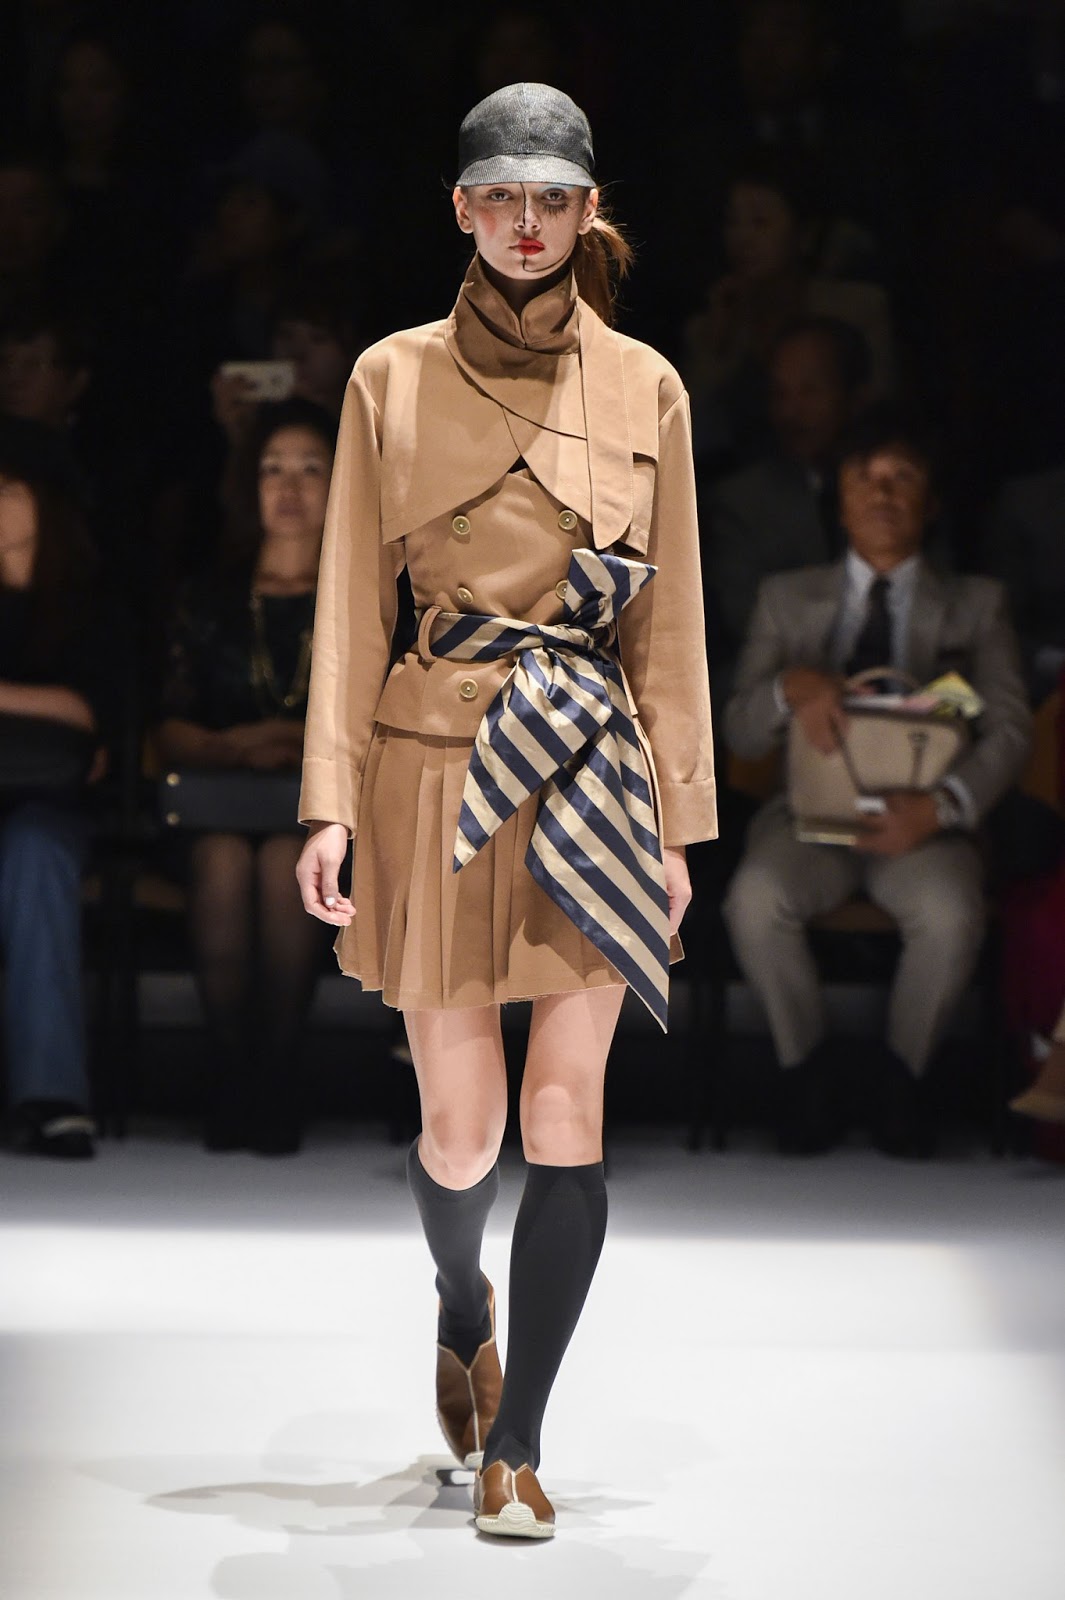 HIROKO KOSHINO: Fashion COOL